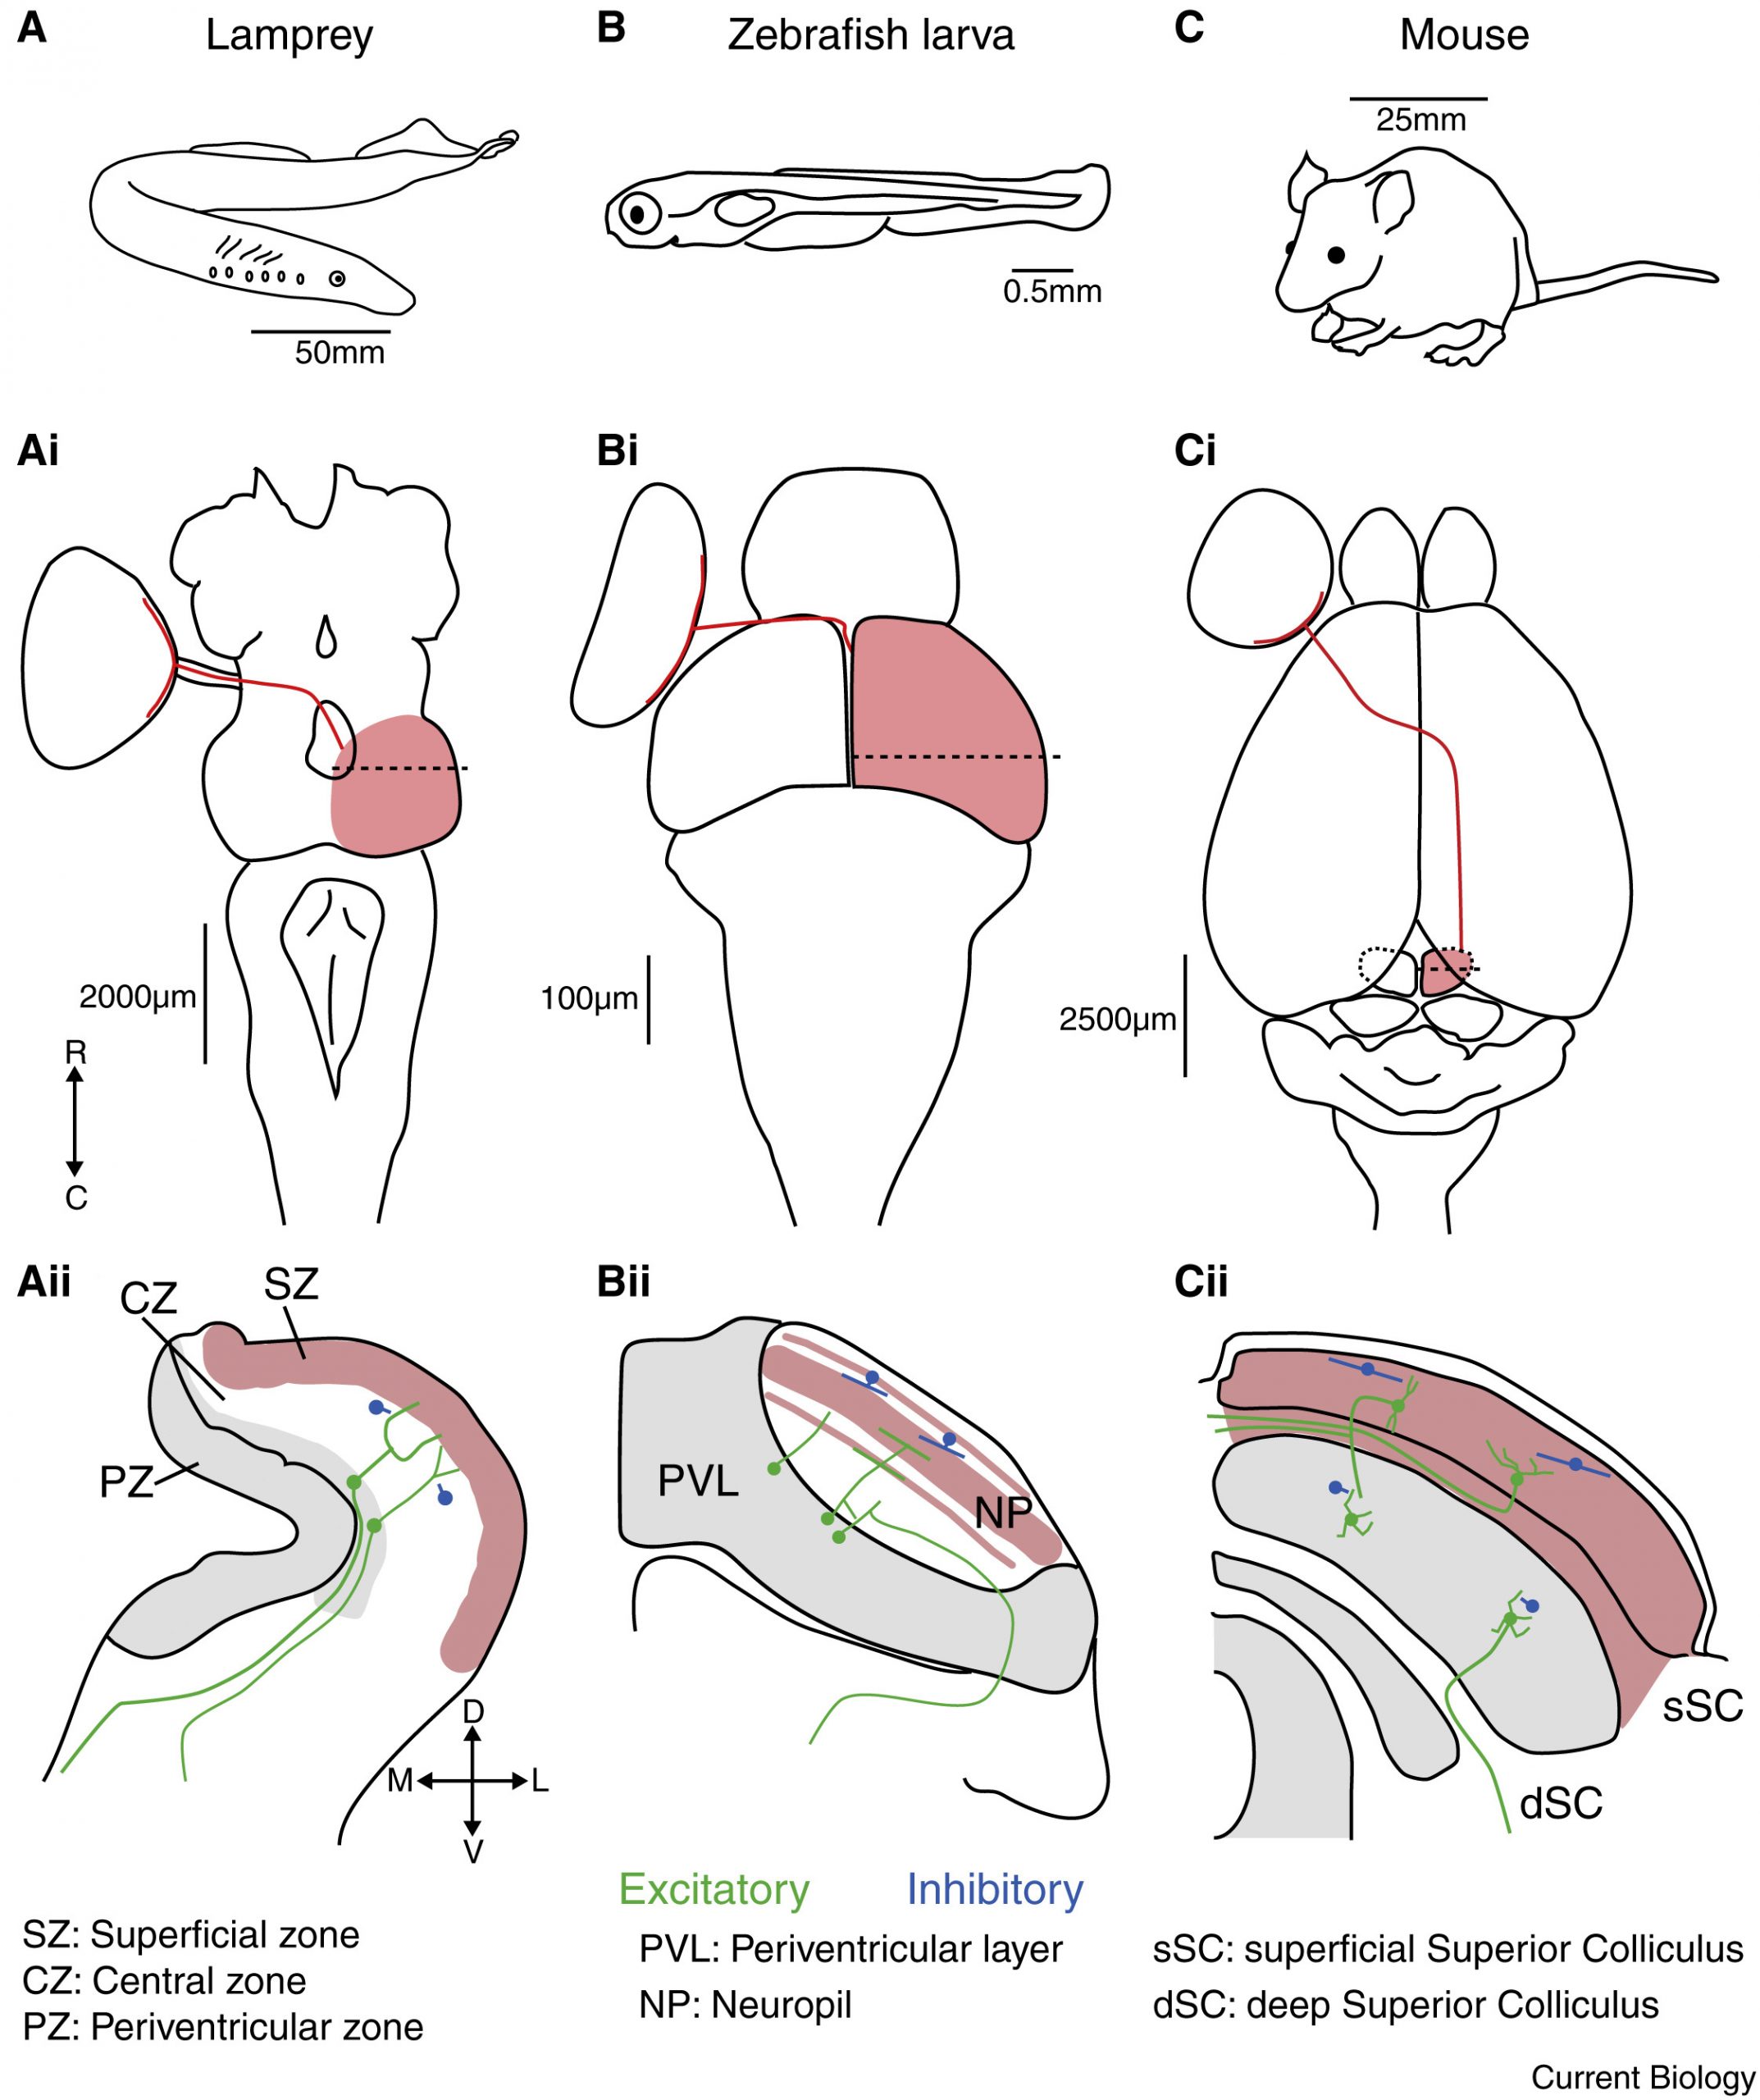 ヤツメウナギ(lamprey)、ゼブラフィッシュの幼魚(zebrafish larva)、マウス(mouse)における視蓋／上丘の位置、大きさ、網膜への入力